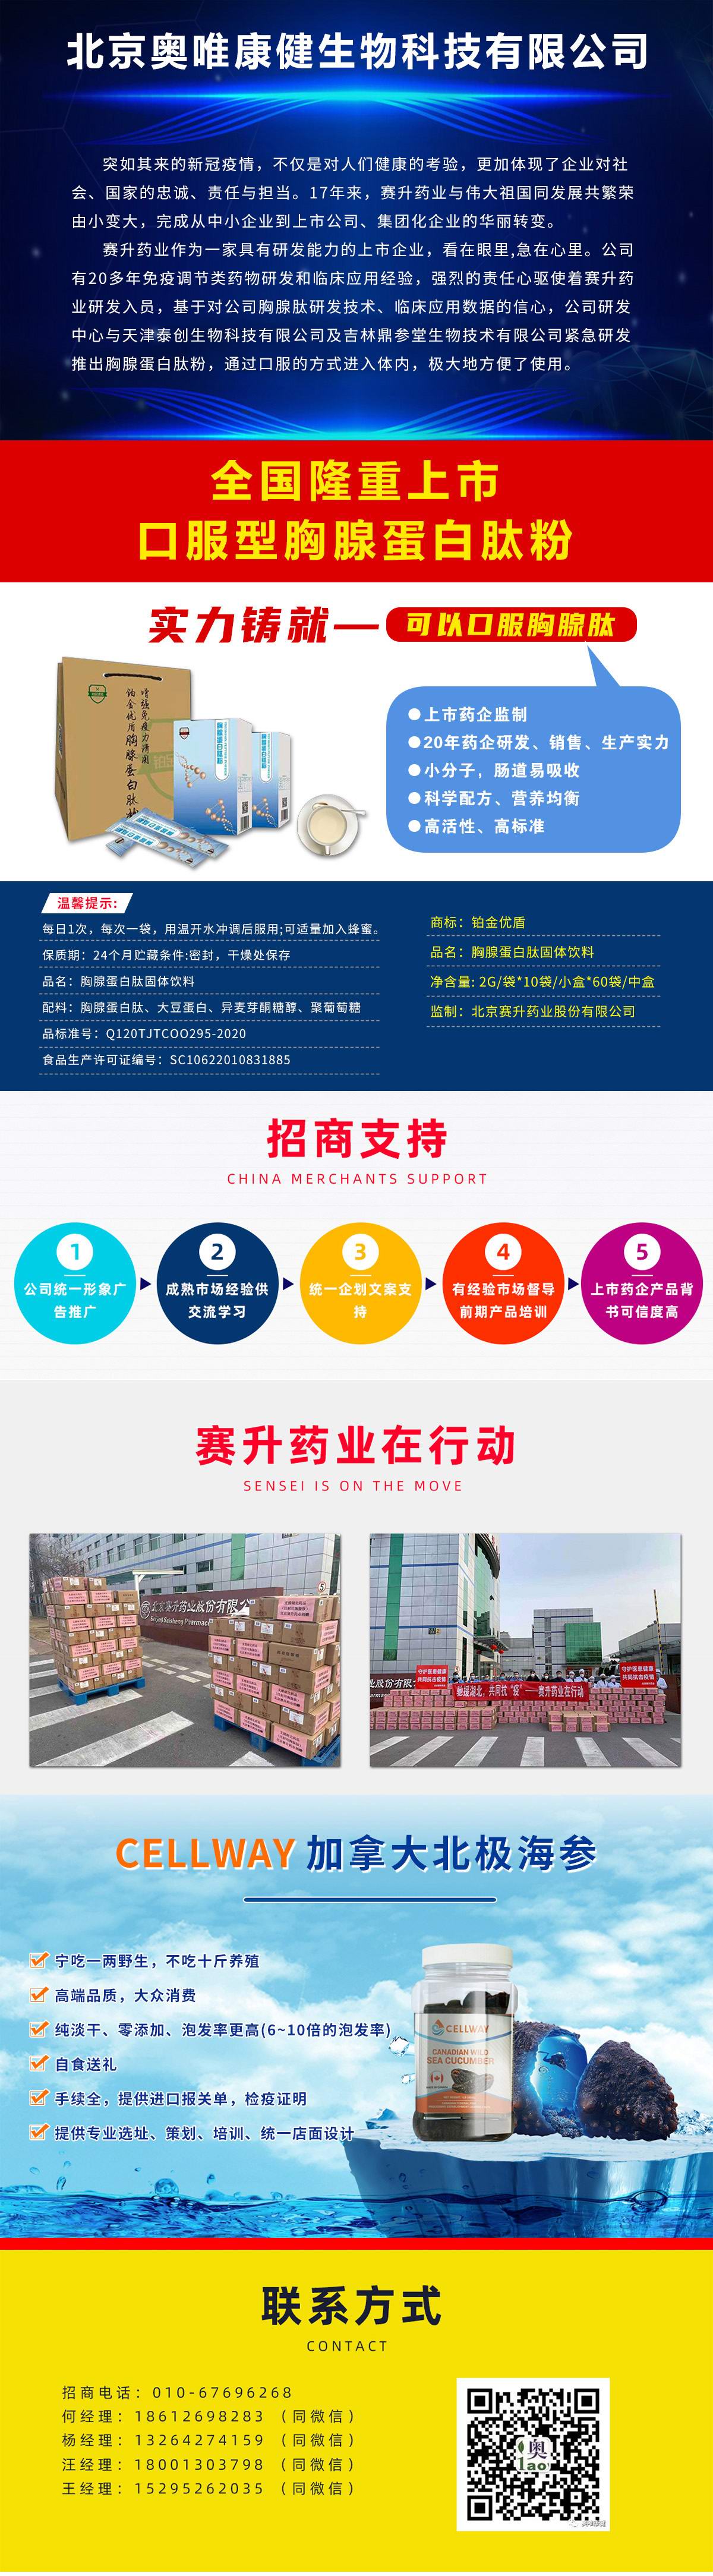 北京奥唯康健生物科技有限公司